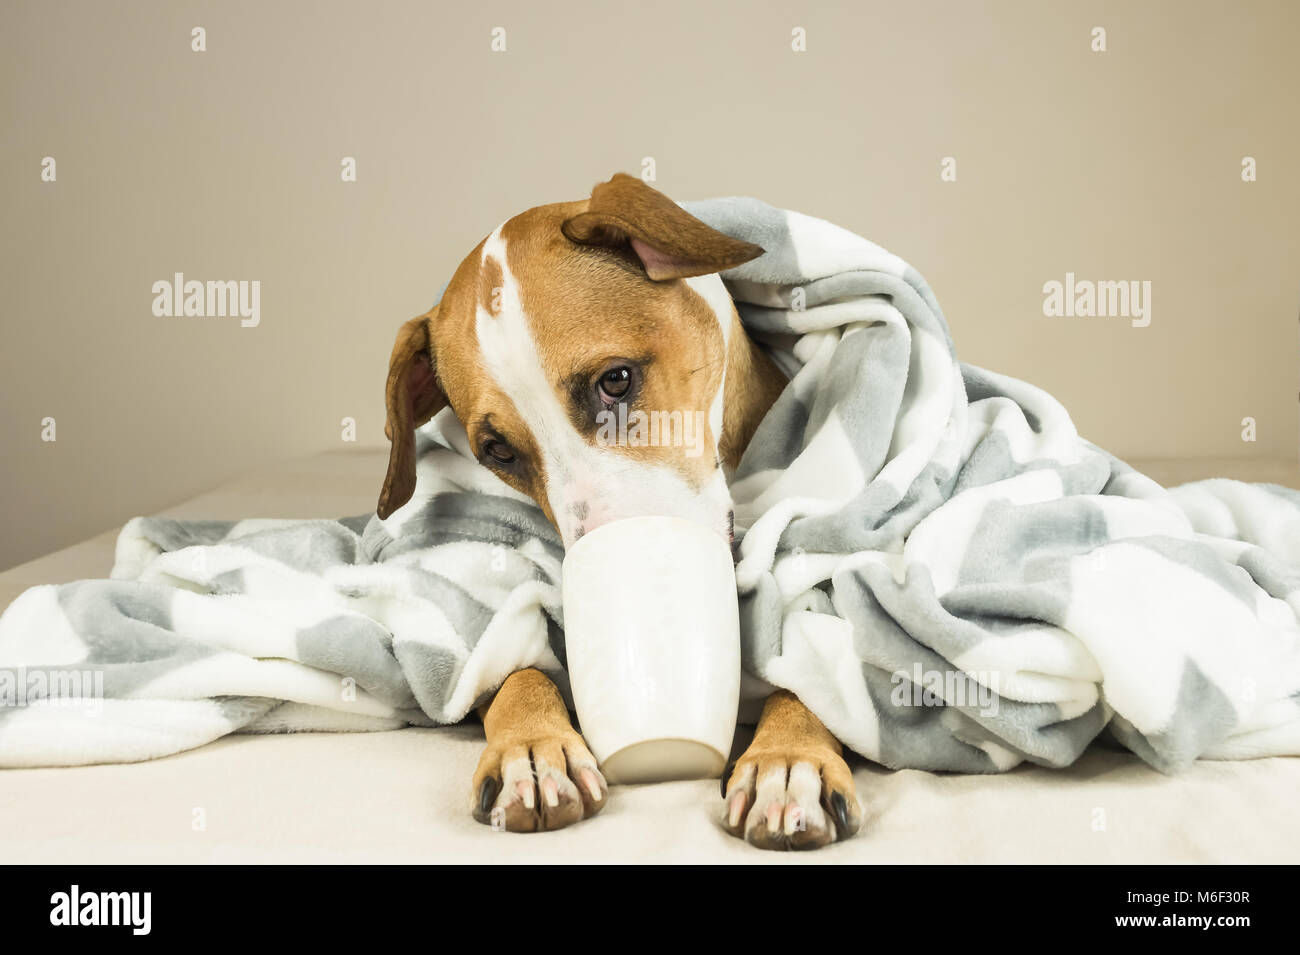 Cute funny Hund im Bett mit Plaid und Schale posieren. Junge Staffordshire Terrier Hund Knuddel in Throw Blanket und hält weiße Tasse, vortäuschen, Tee zu trinken Stockfoto